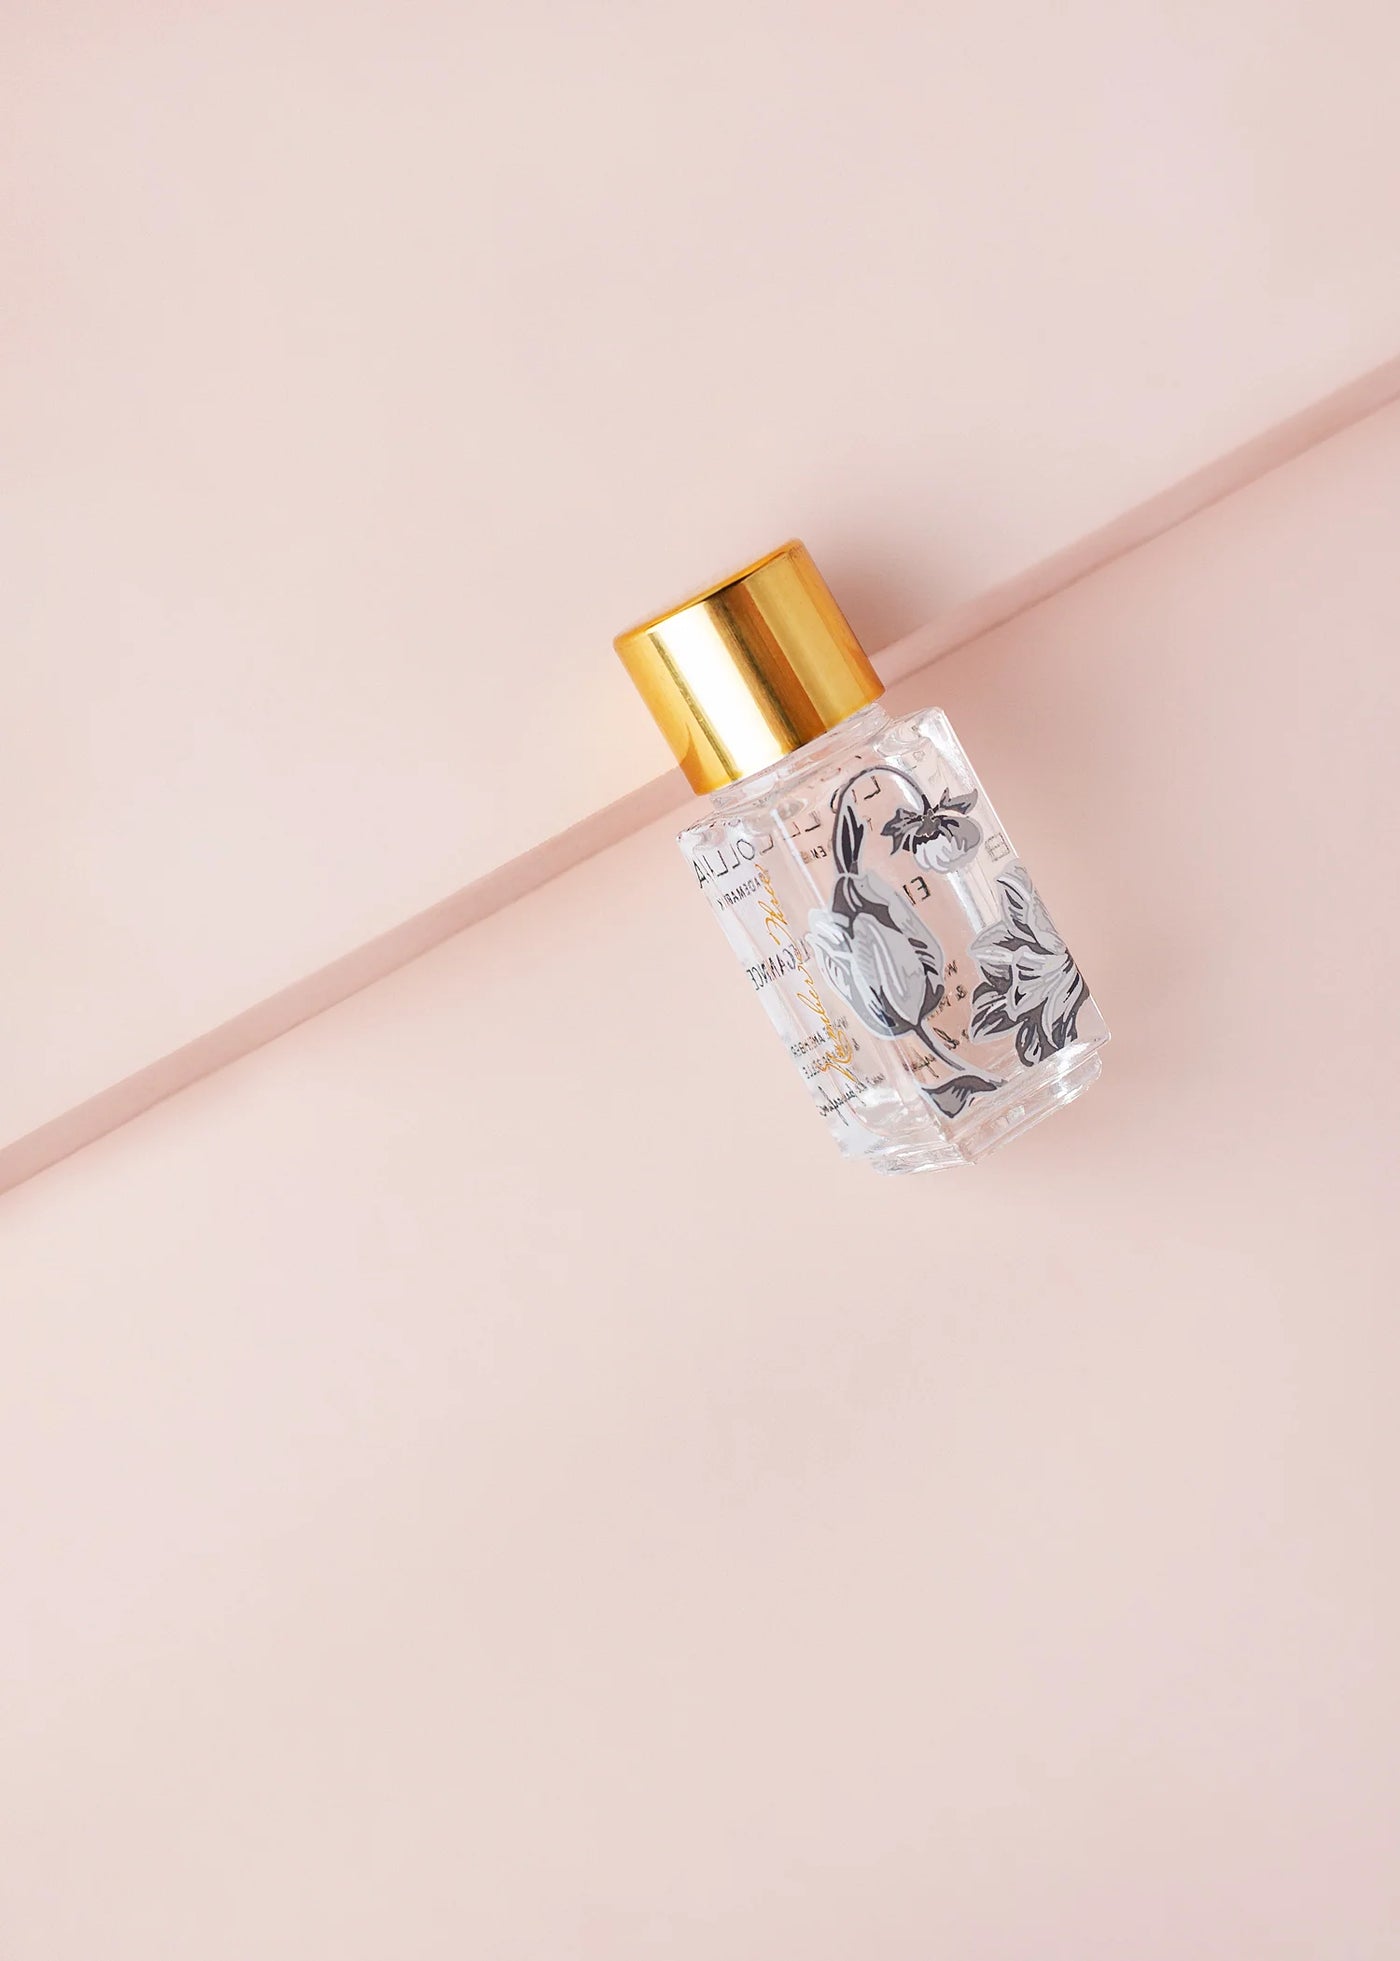 Elegance Little Luxe Eau de Parfum by Lollia